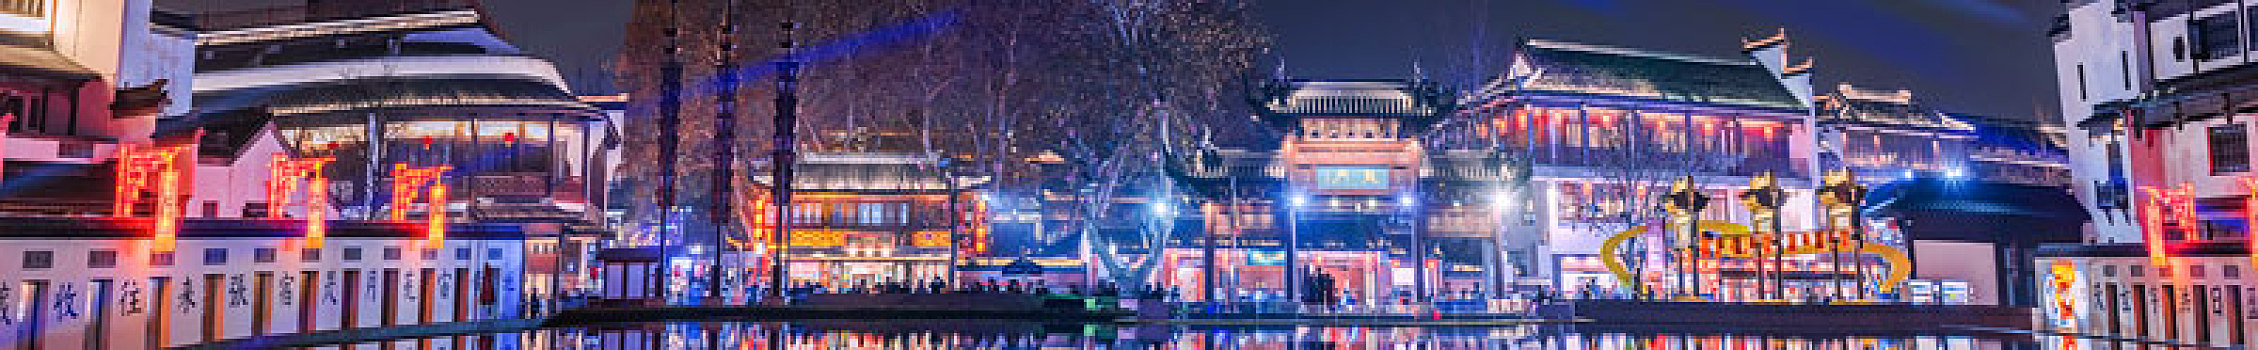 中国江苏省南京市夫子庙和江南贡院建筑夜景